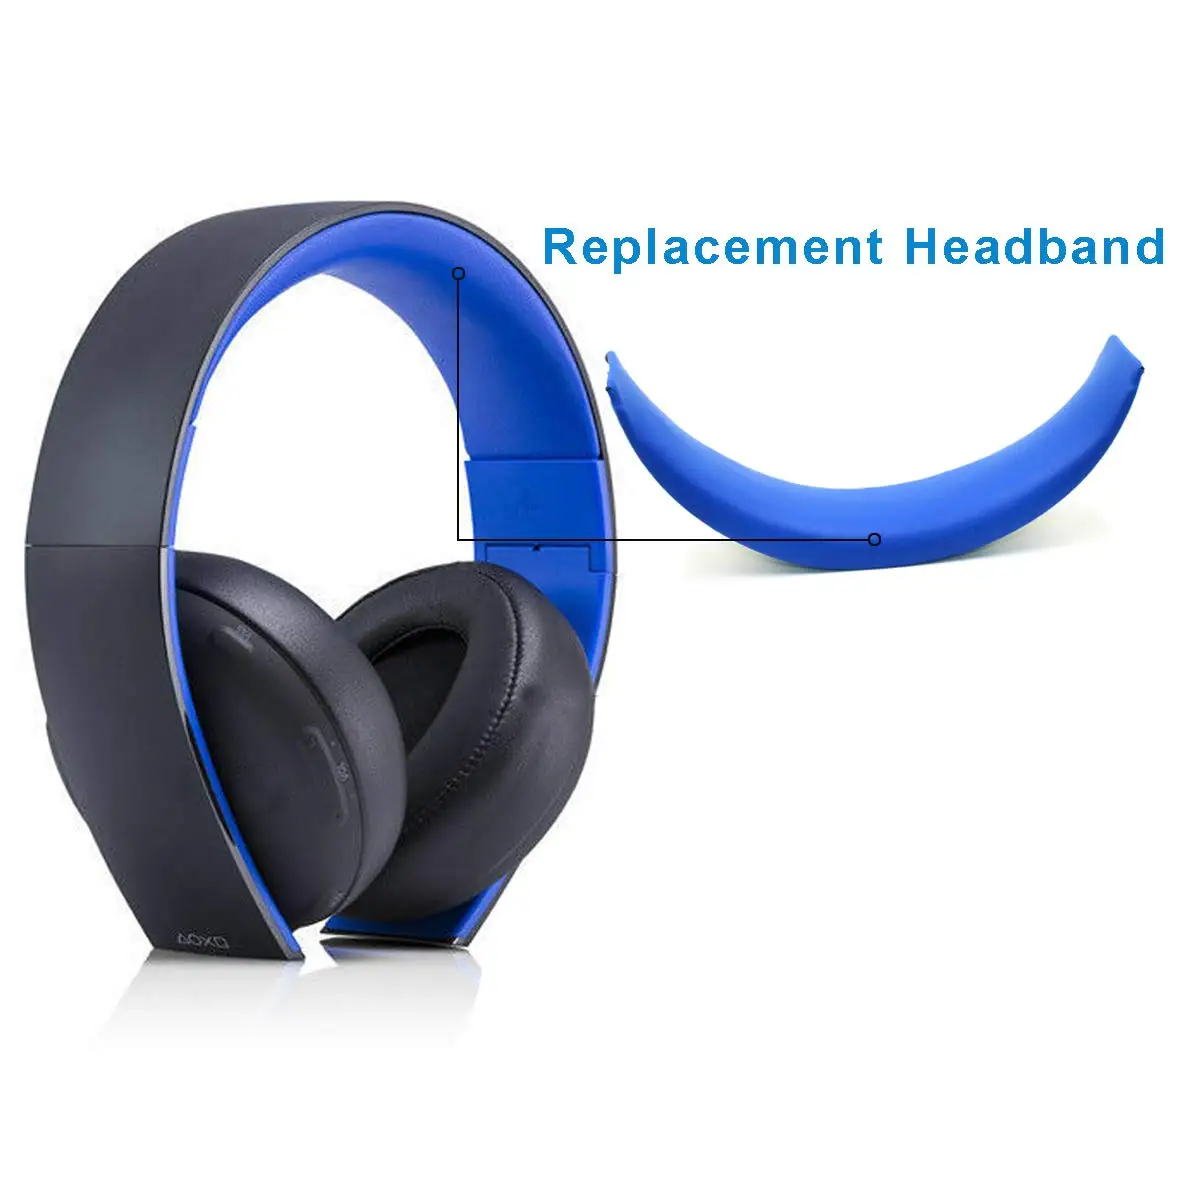 Upgrade mušle slúchadiel Výmena za Sony Zlato Bezdrôtový Headset, PS3, PS4 7.1 Virtuálny Priestorový Zvuk CECHYA-0083 Slúchadlá (Modrá)